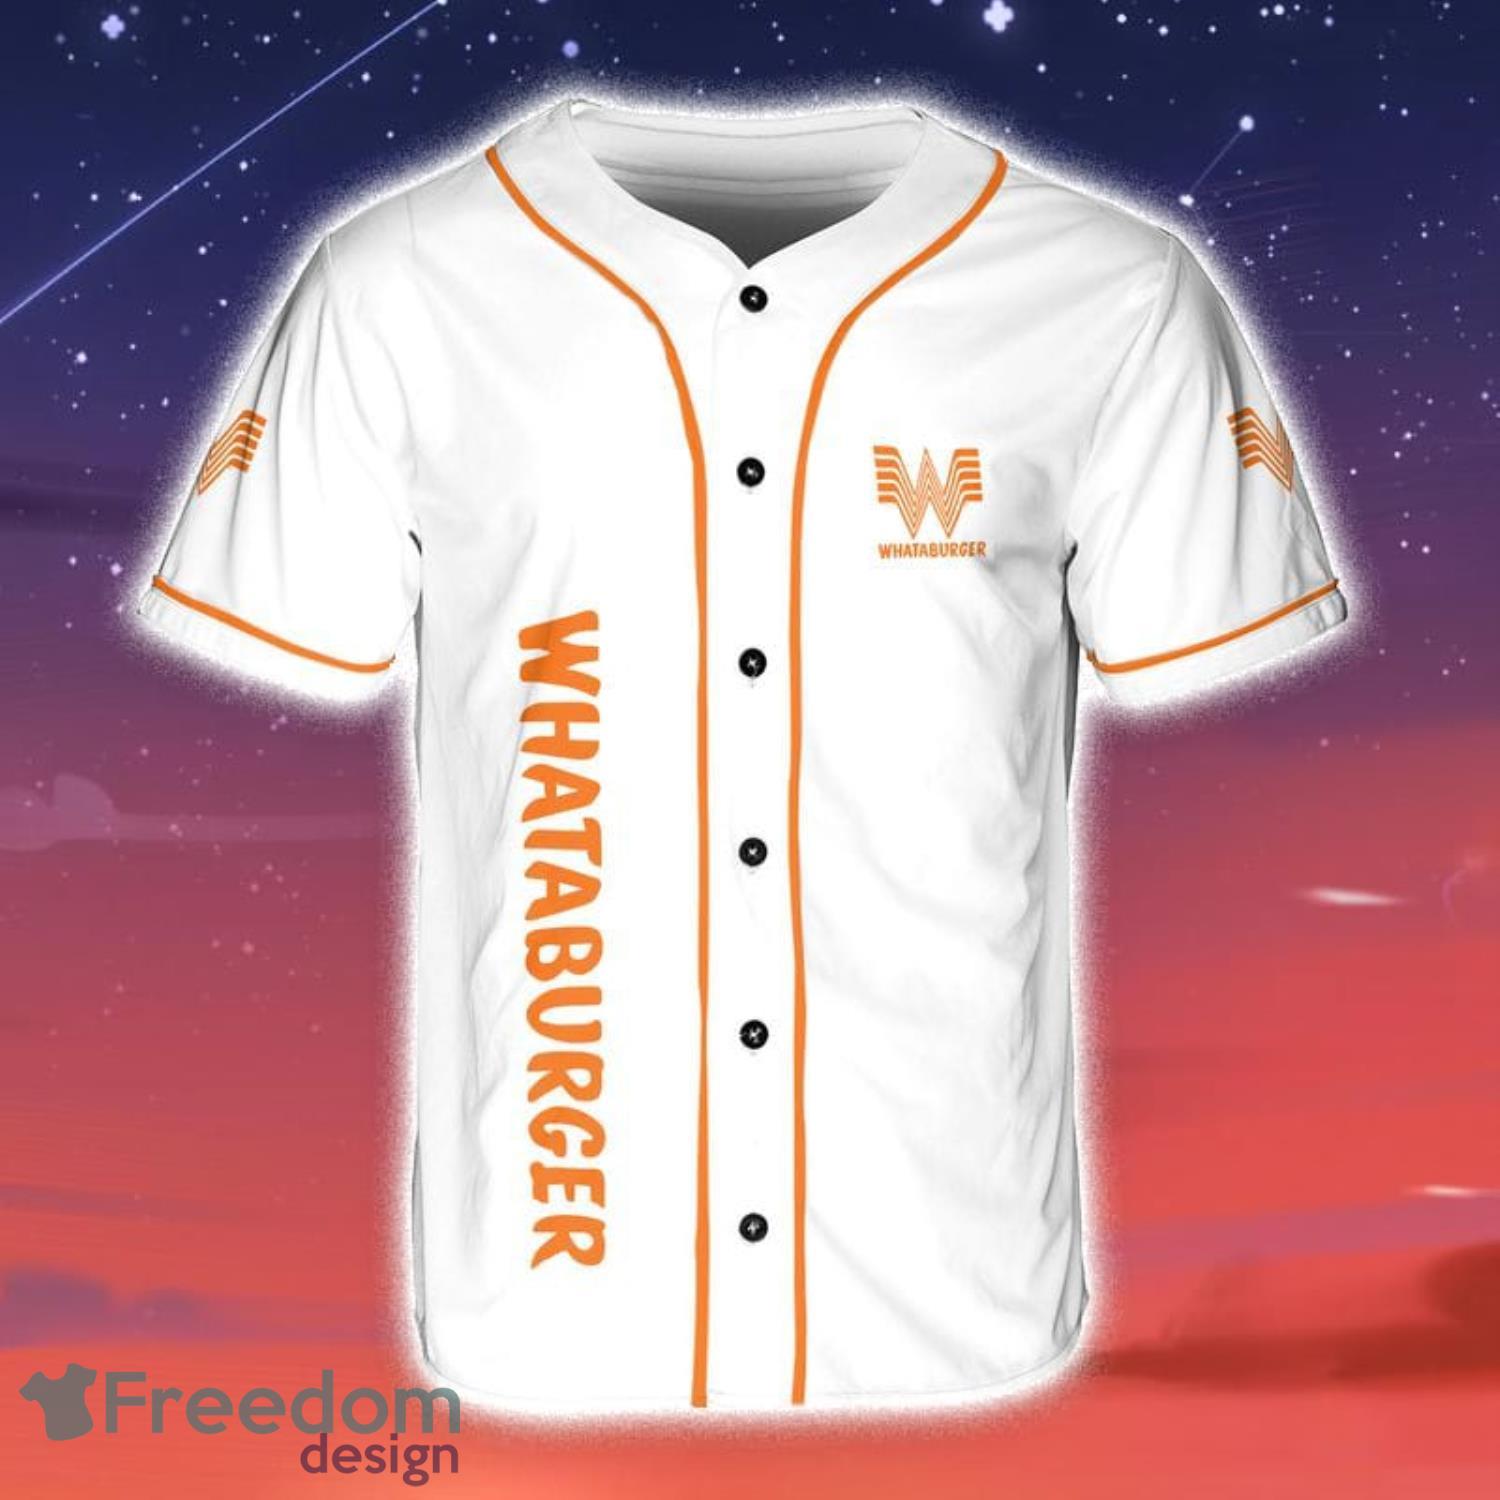 Whataburger Baseball Jersey Shirt Summer Gift For Sport Fans - Freedomdesign